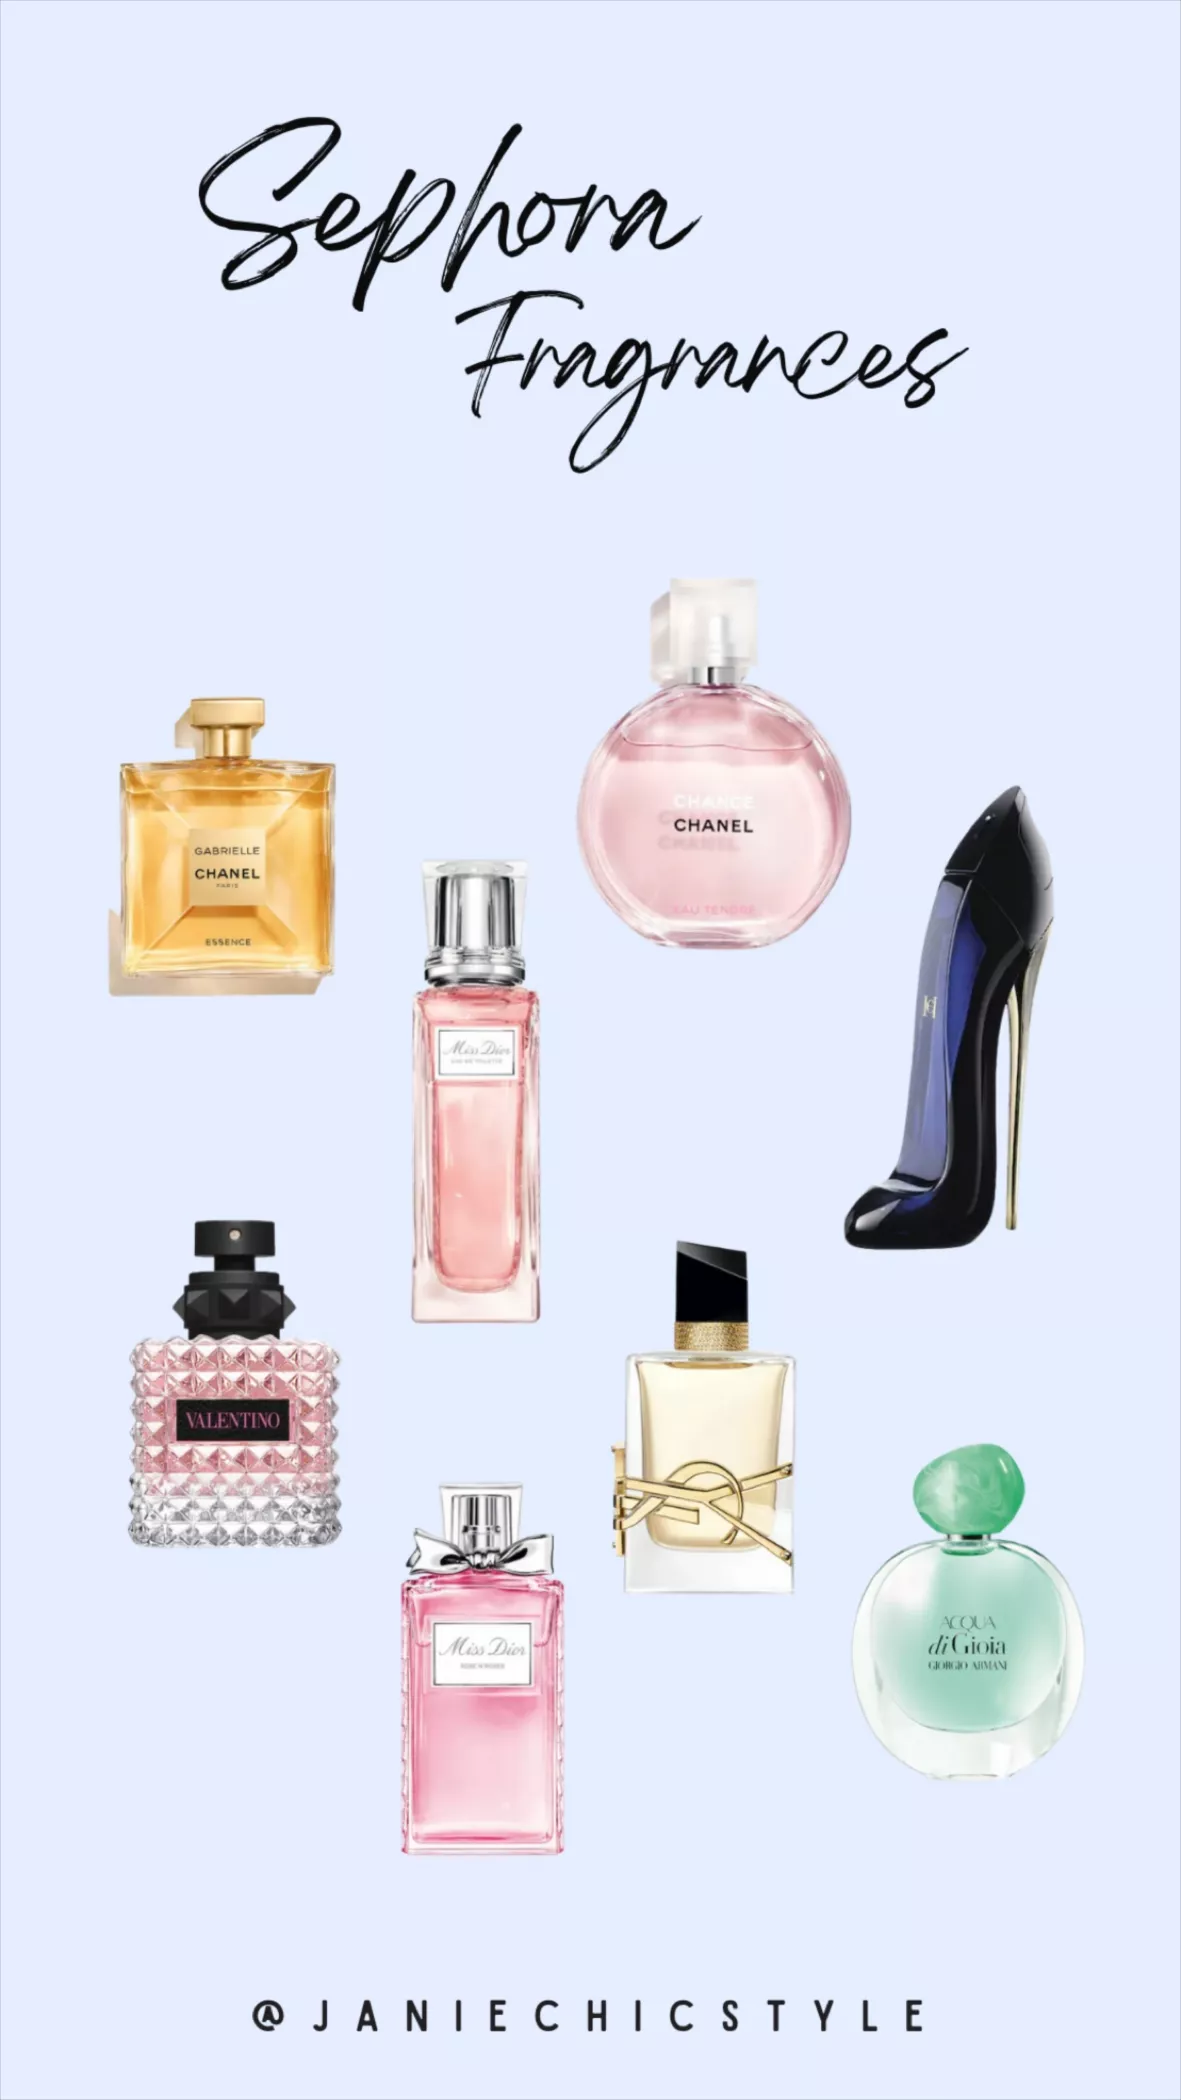 Her Elixir Eau de Parfum Intense - … curated on LTK